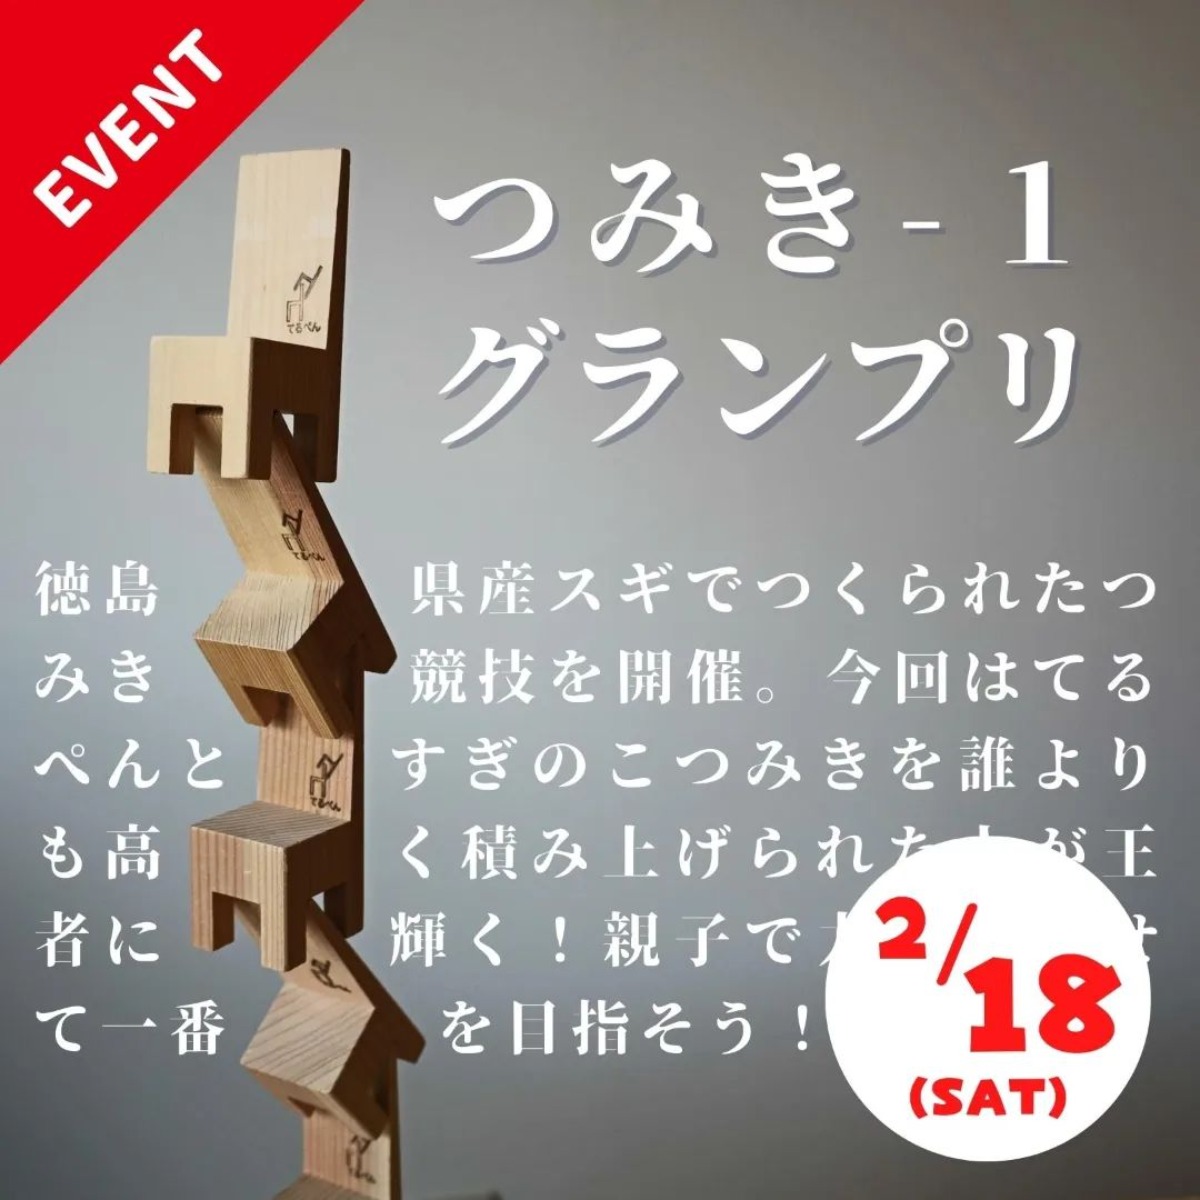 【徳島イベント情報】木のおもちゃ美術館【2月】